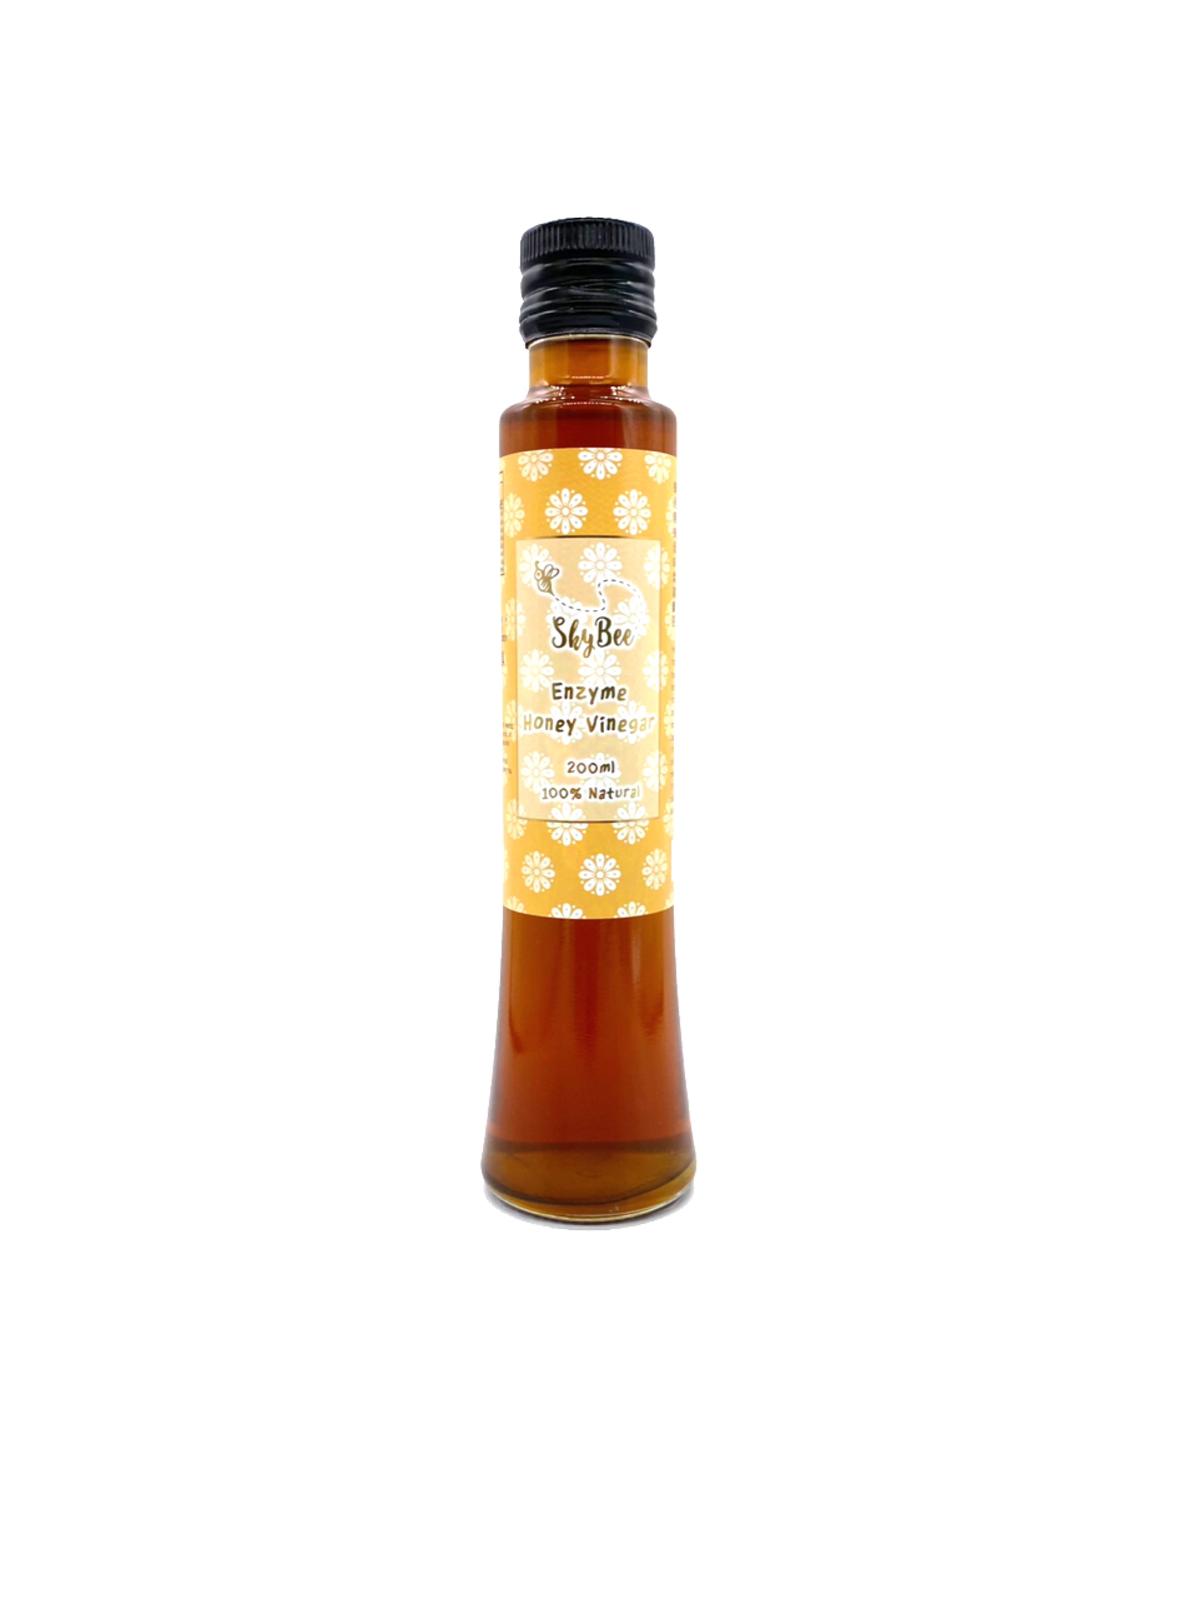 Enzyme Honey Vinegar 200ml